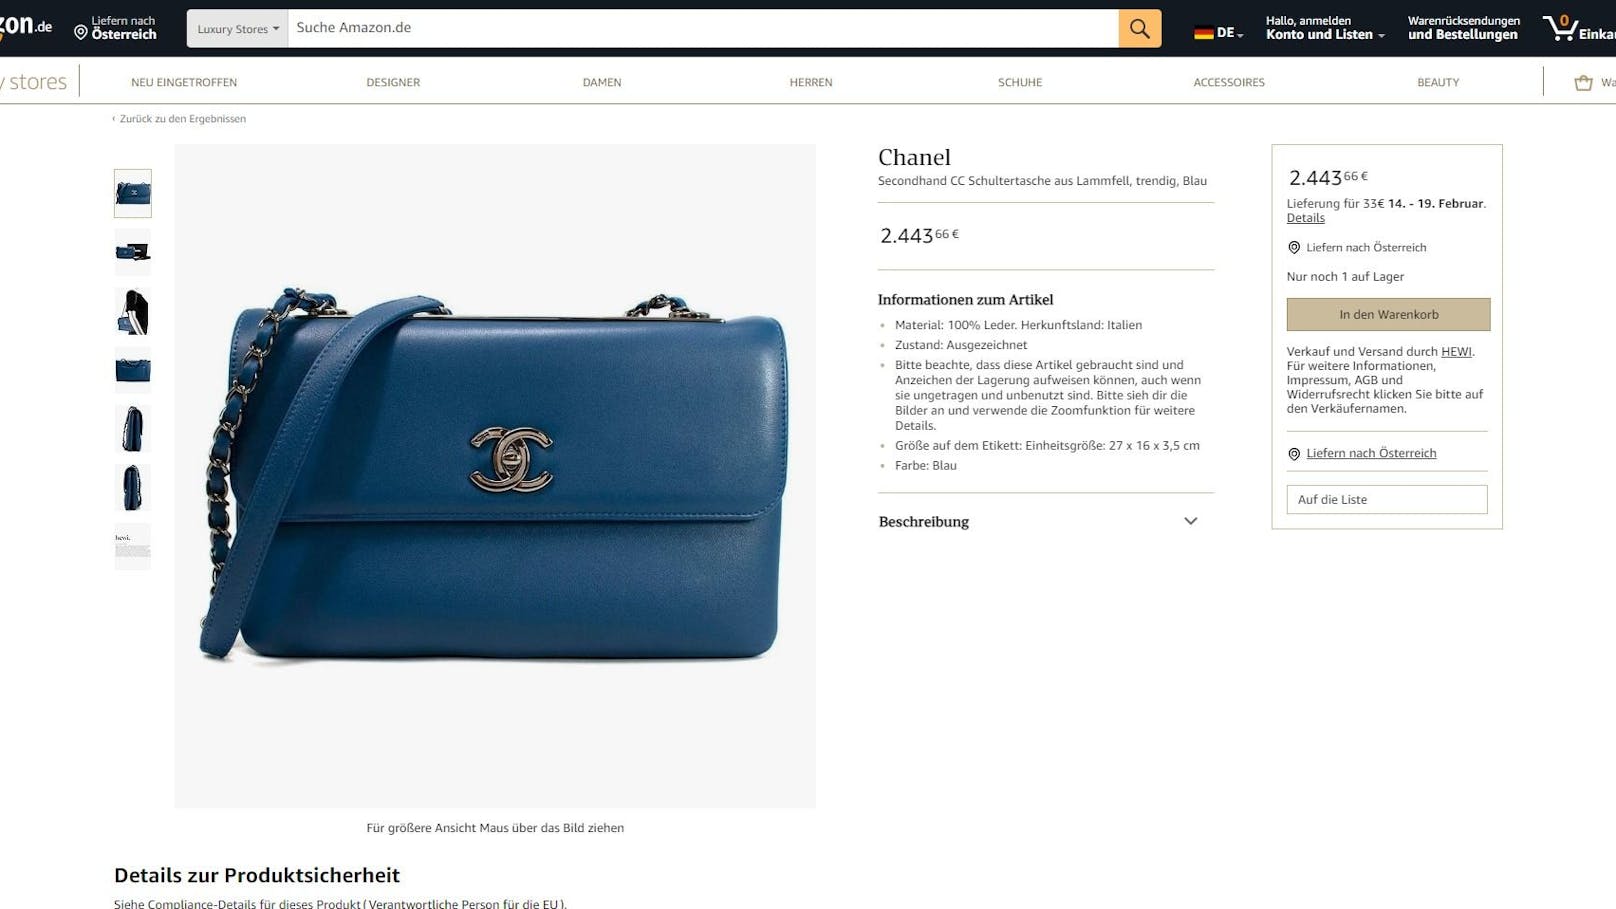 Auf Amazon findet man jetzt auch Chaneltaschen.